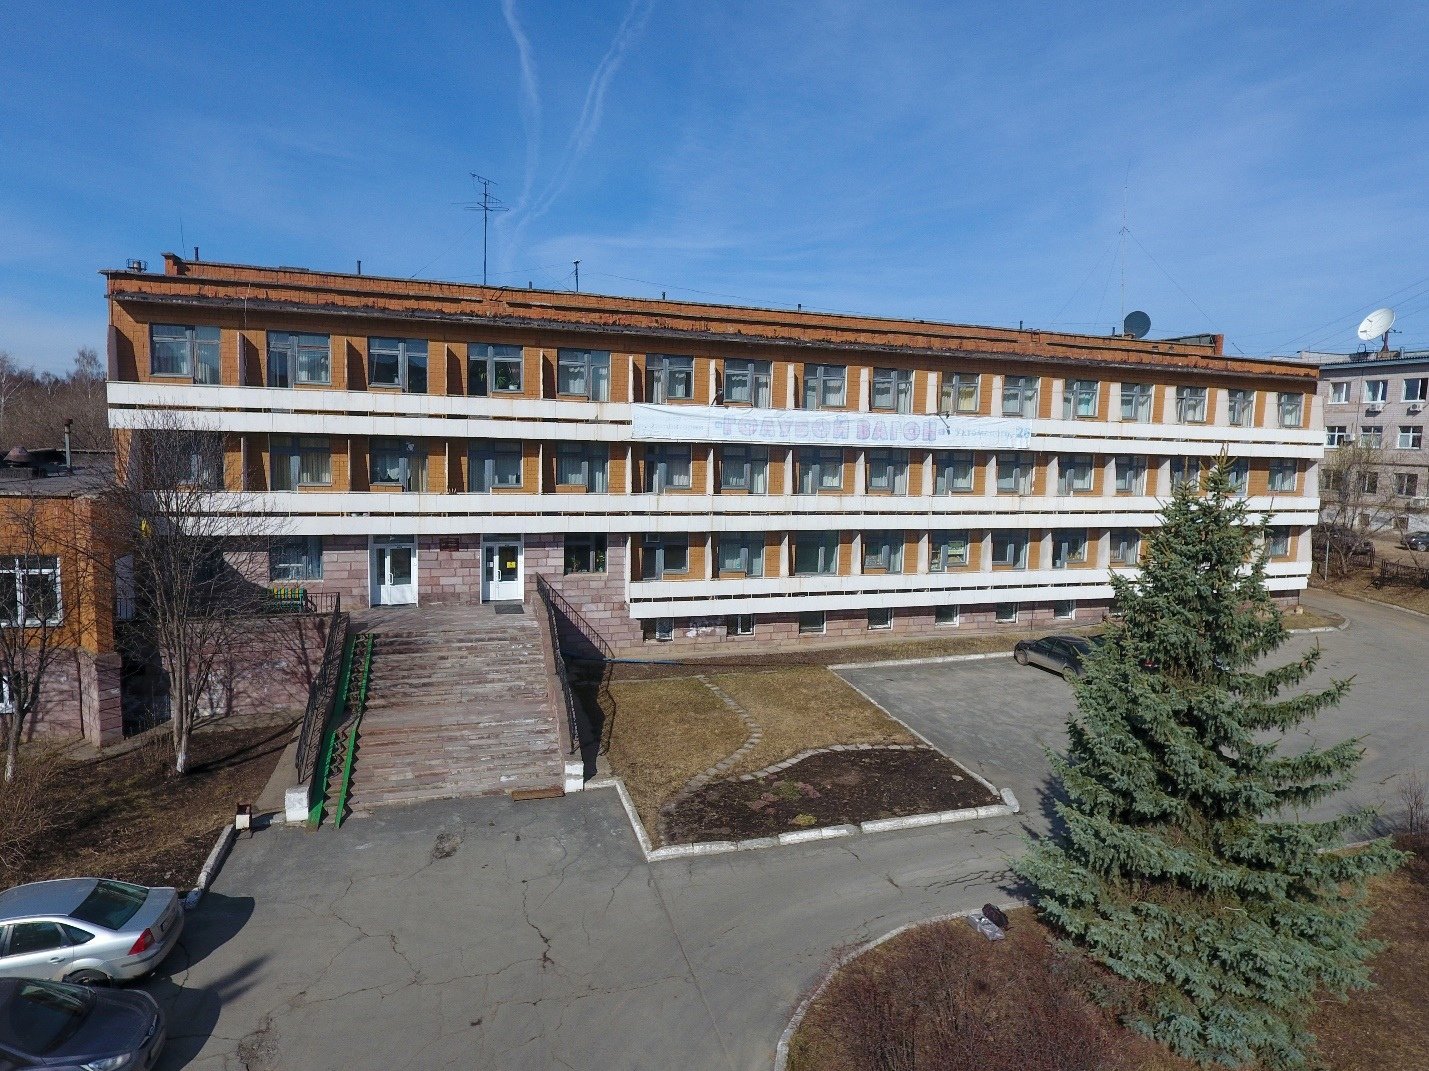 

Здание санатория «Голубой вагон» в Ижевске выставили на аукцион

